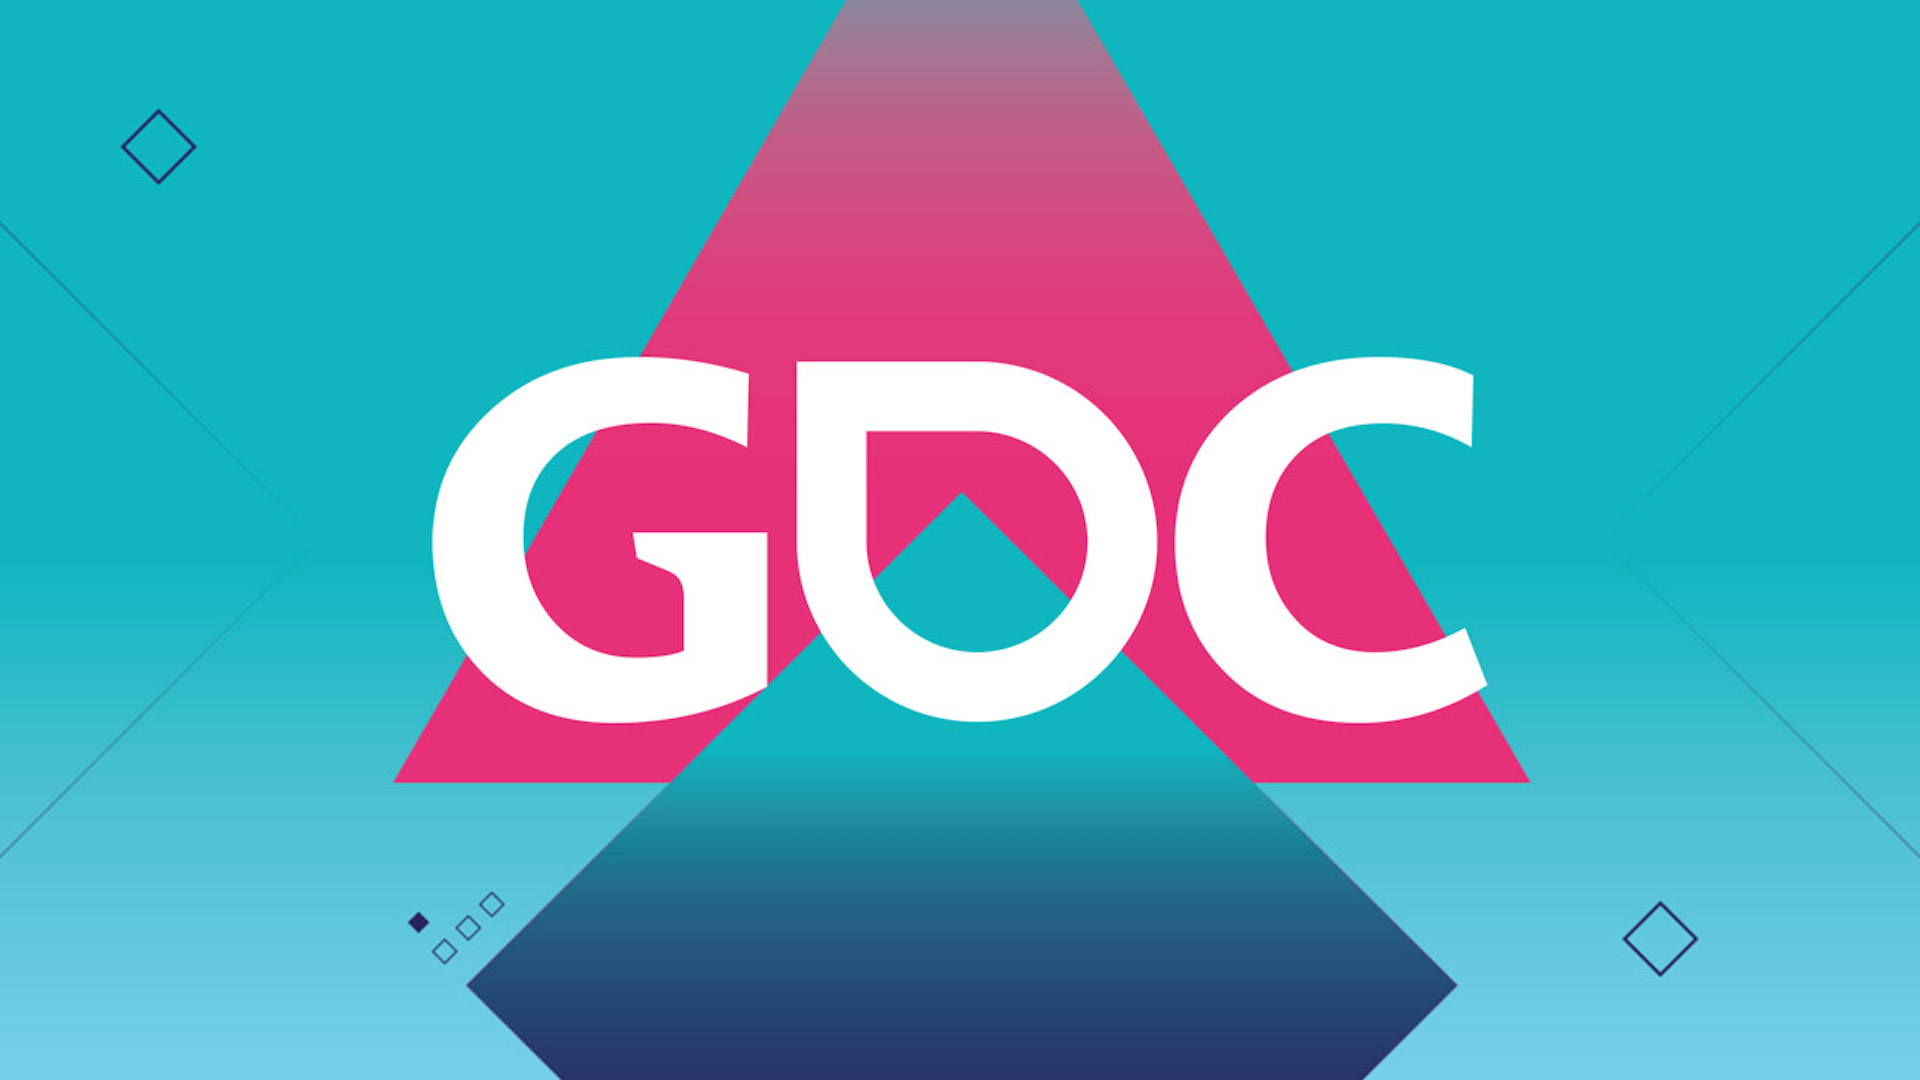 صورة رسمياً : تأجيل معرض GDC 2020 للصيف المقبل بسبب فيروس “كورونا” !